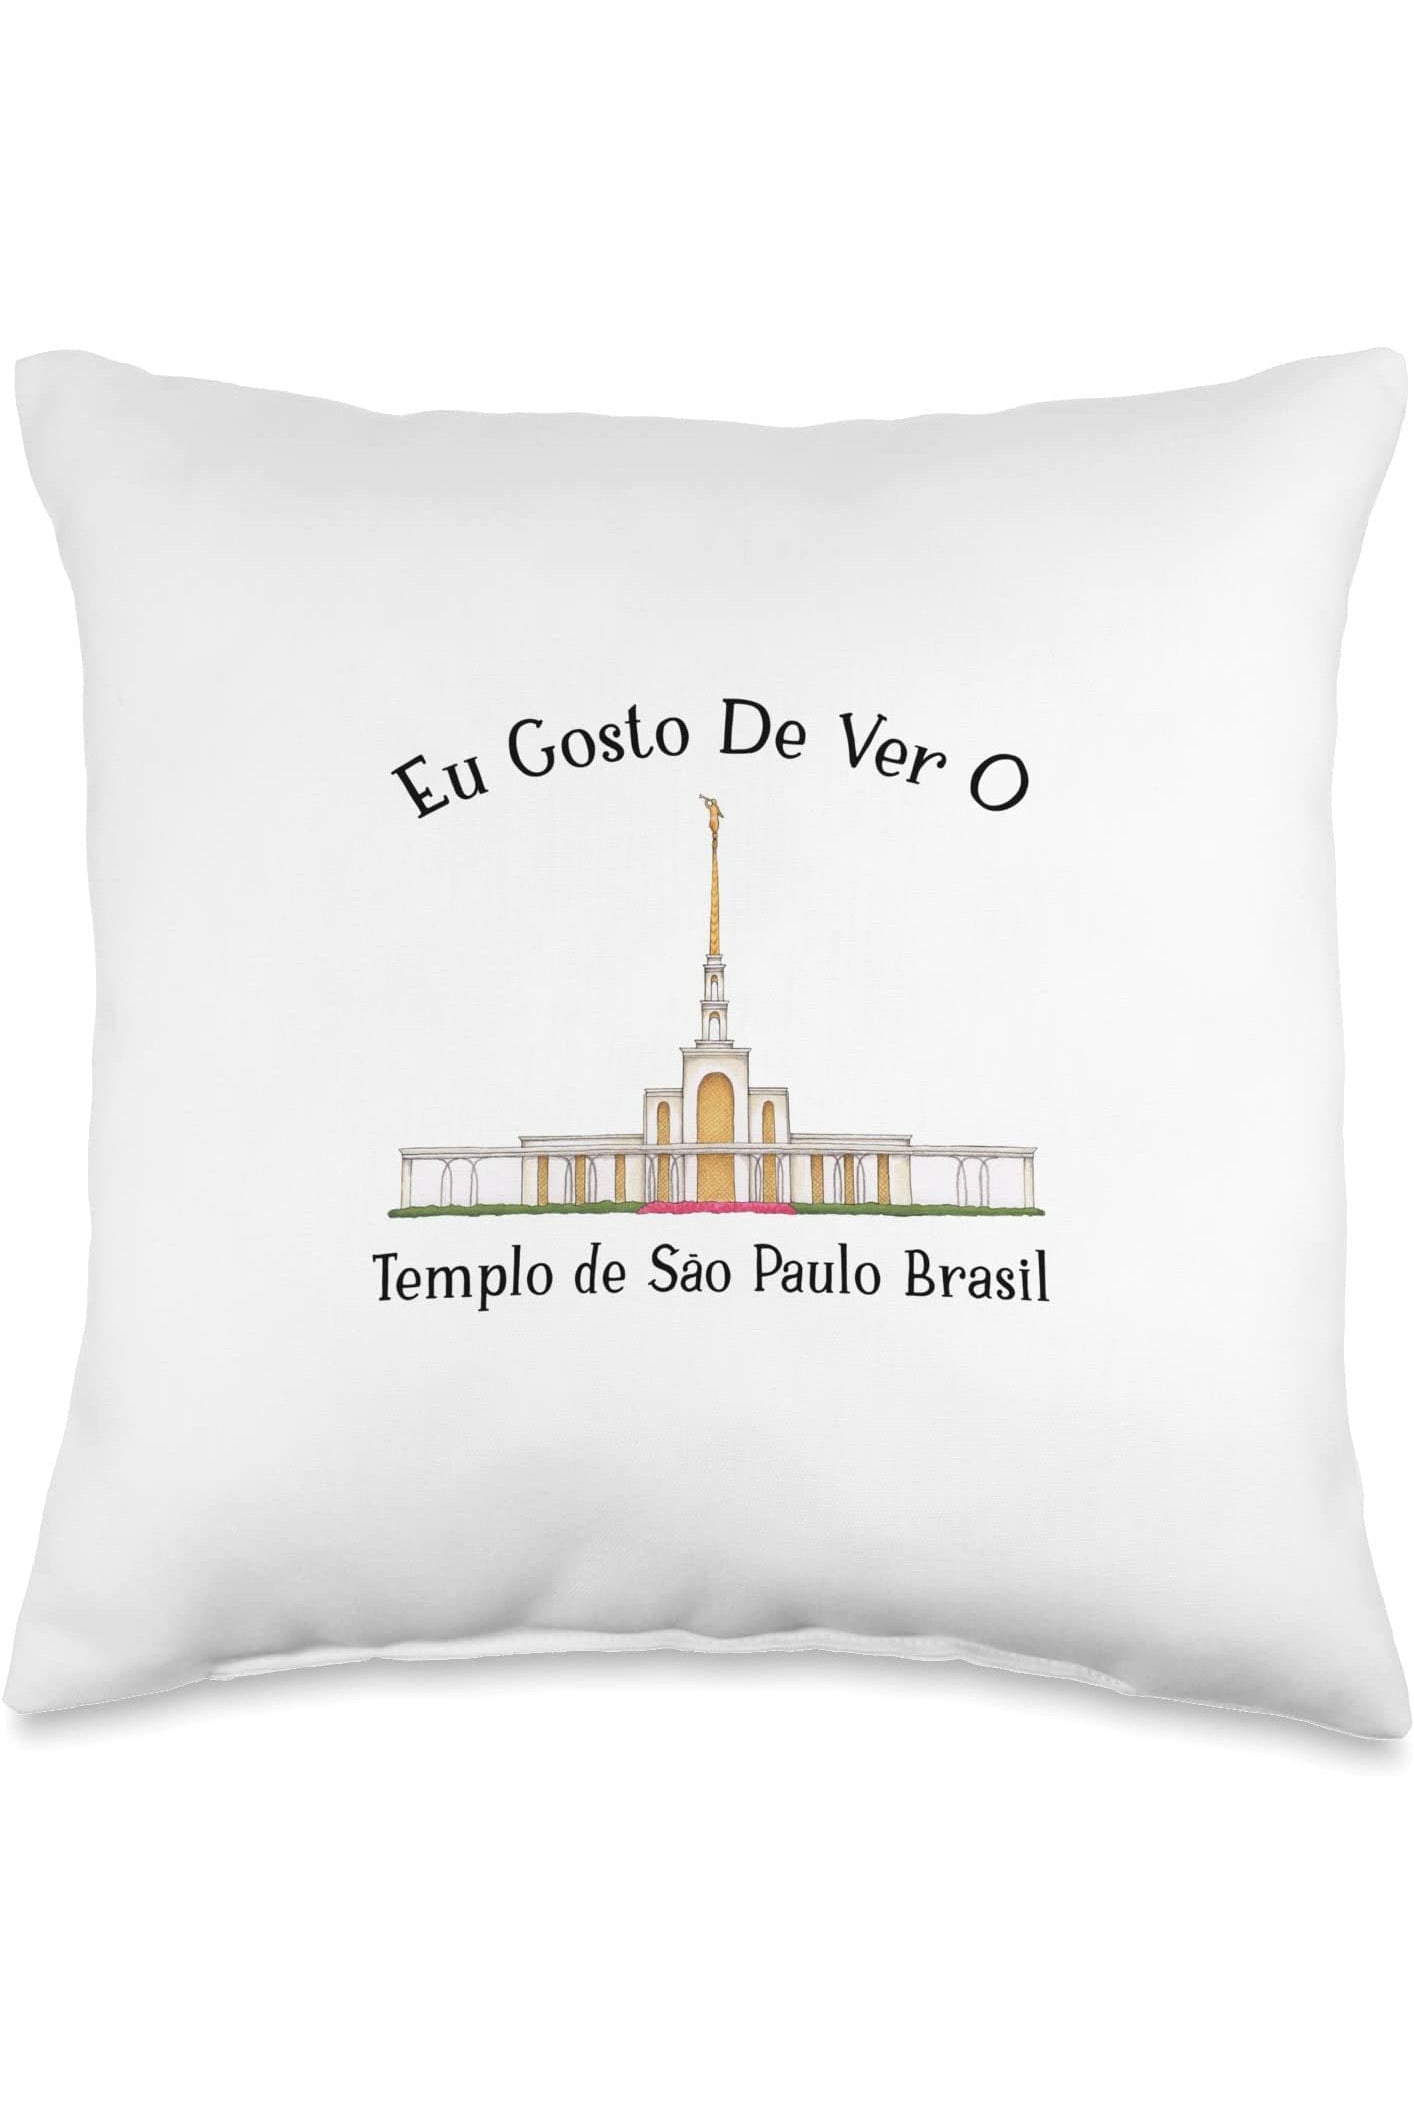 Templo de Manaus Brasil Throw Pillows - Happy Style (Portuguese) US